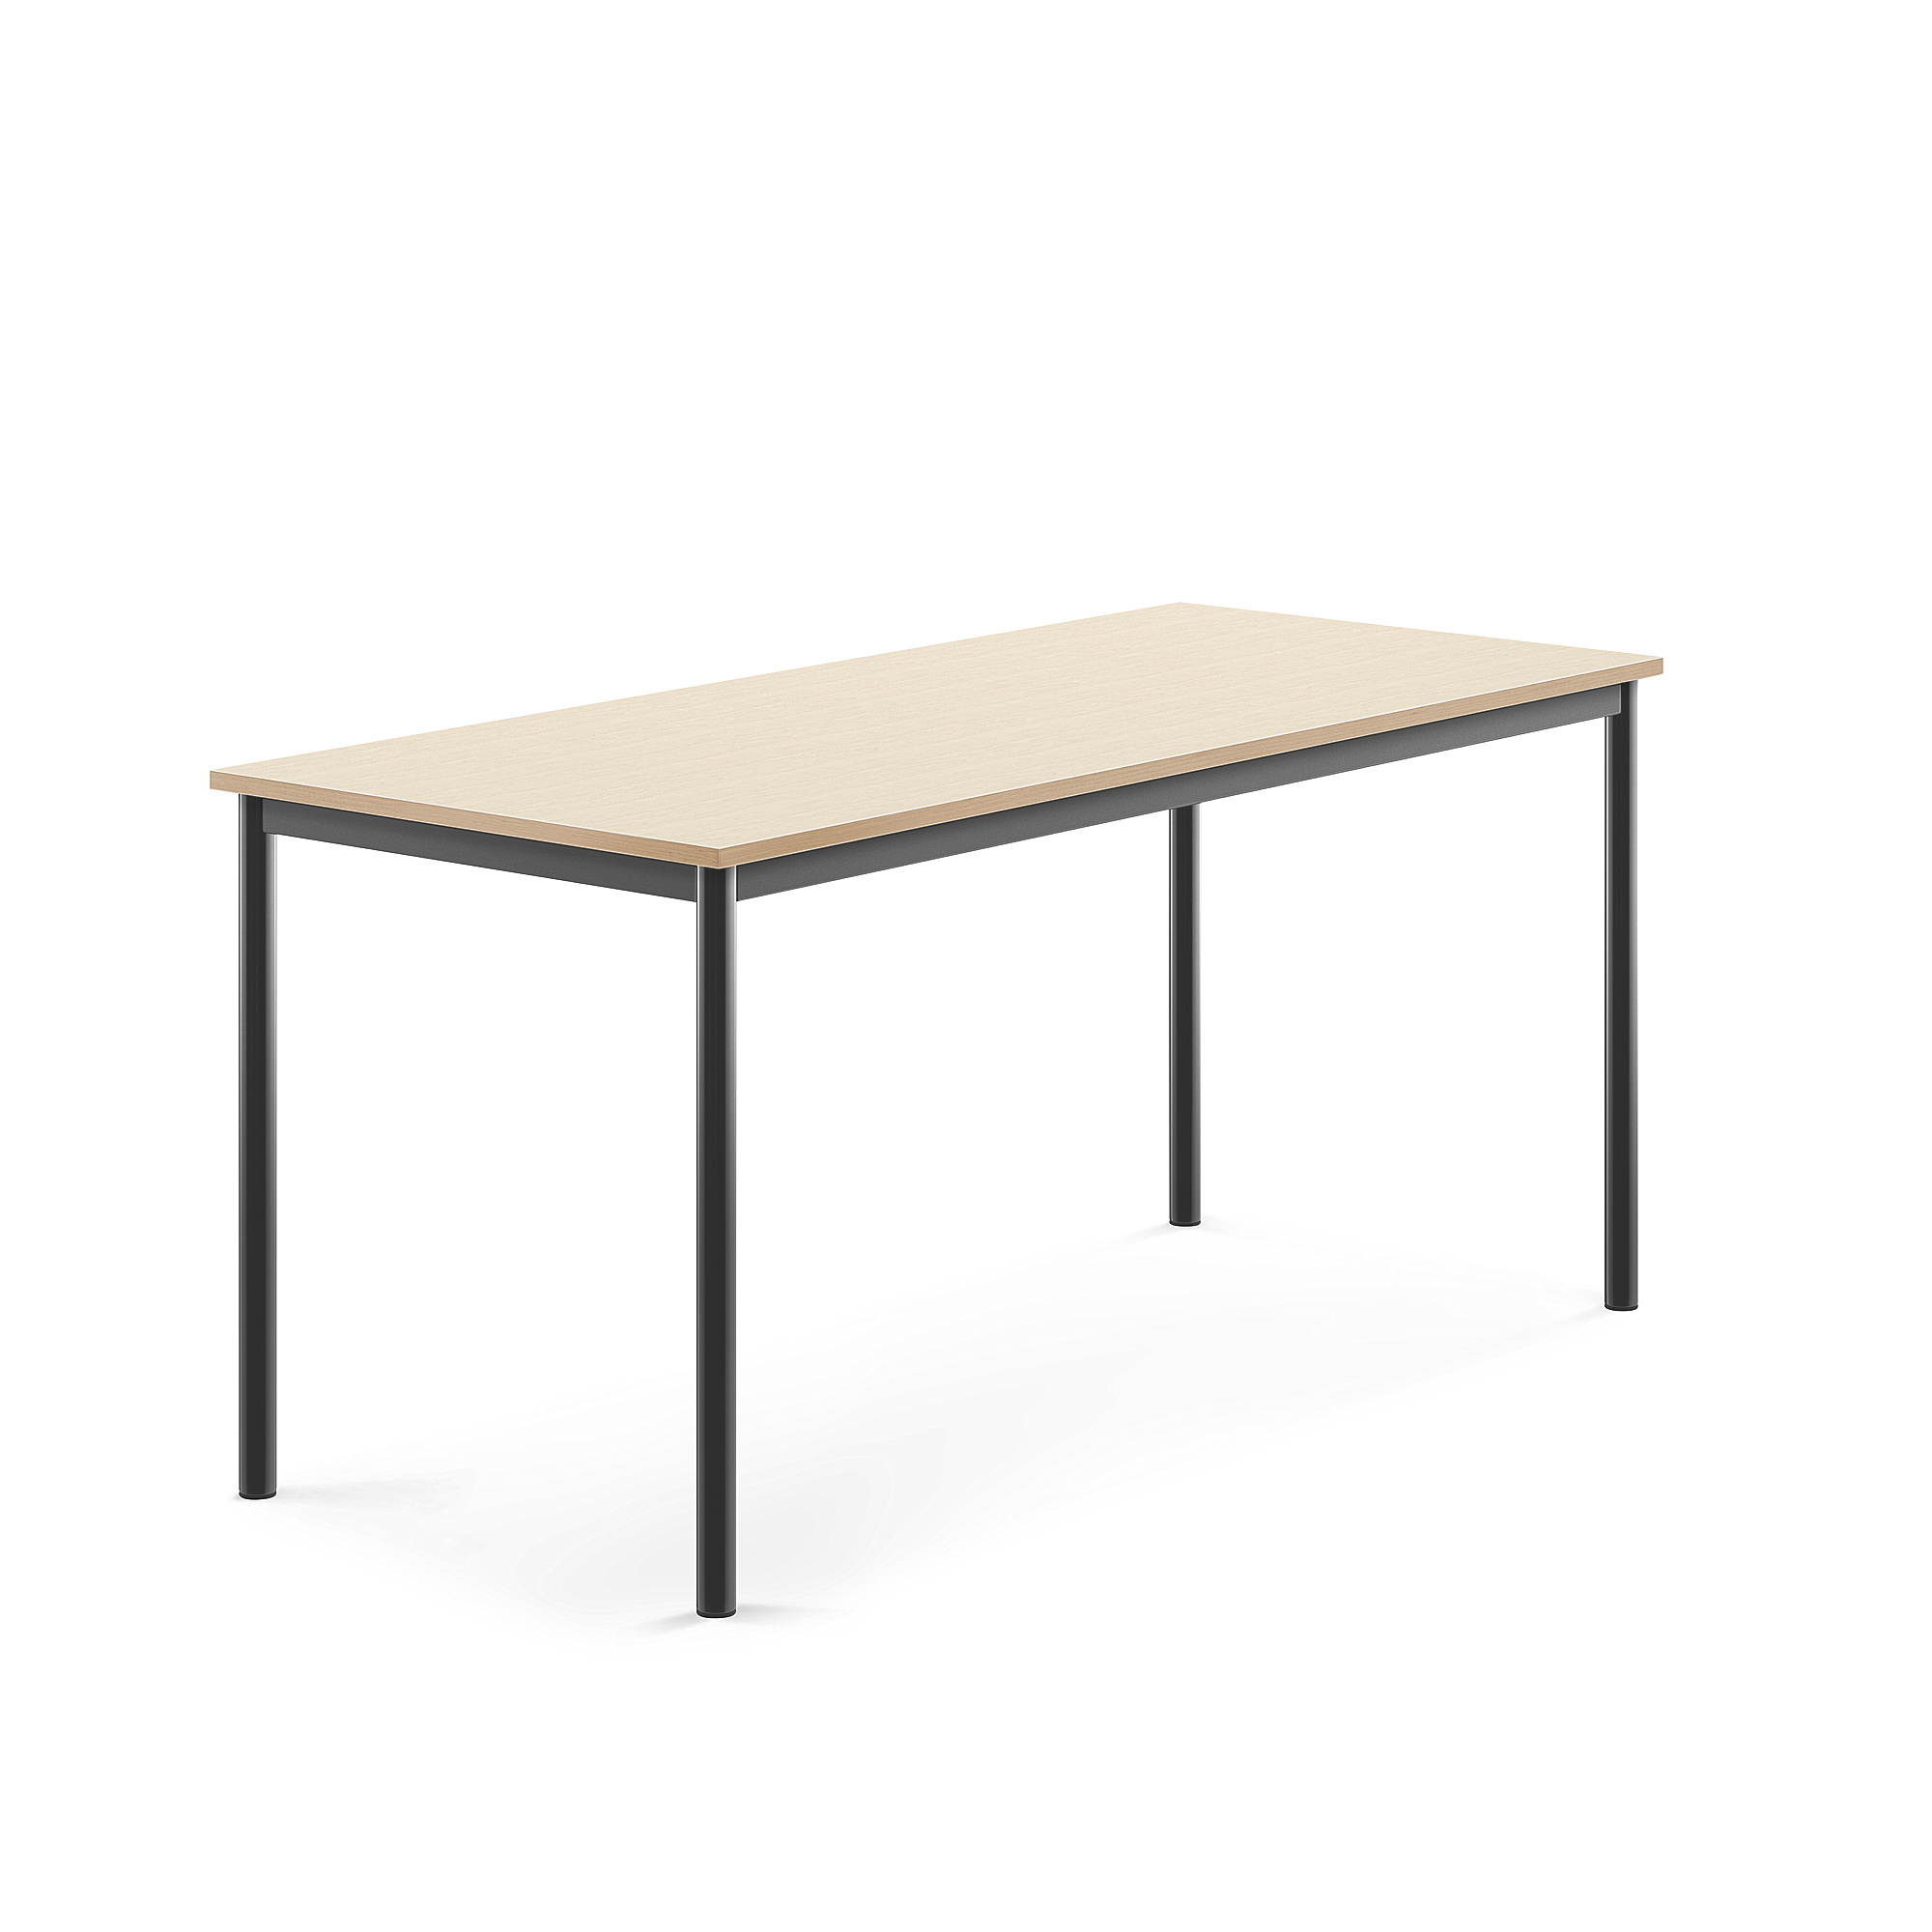 Stůl BORÅS, 1600x700x720 mm, antracitově šedé nohy, HPL deska, bříza